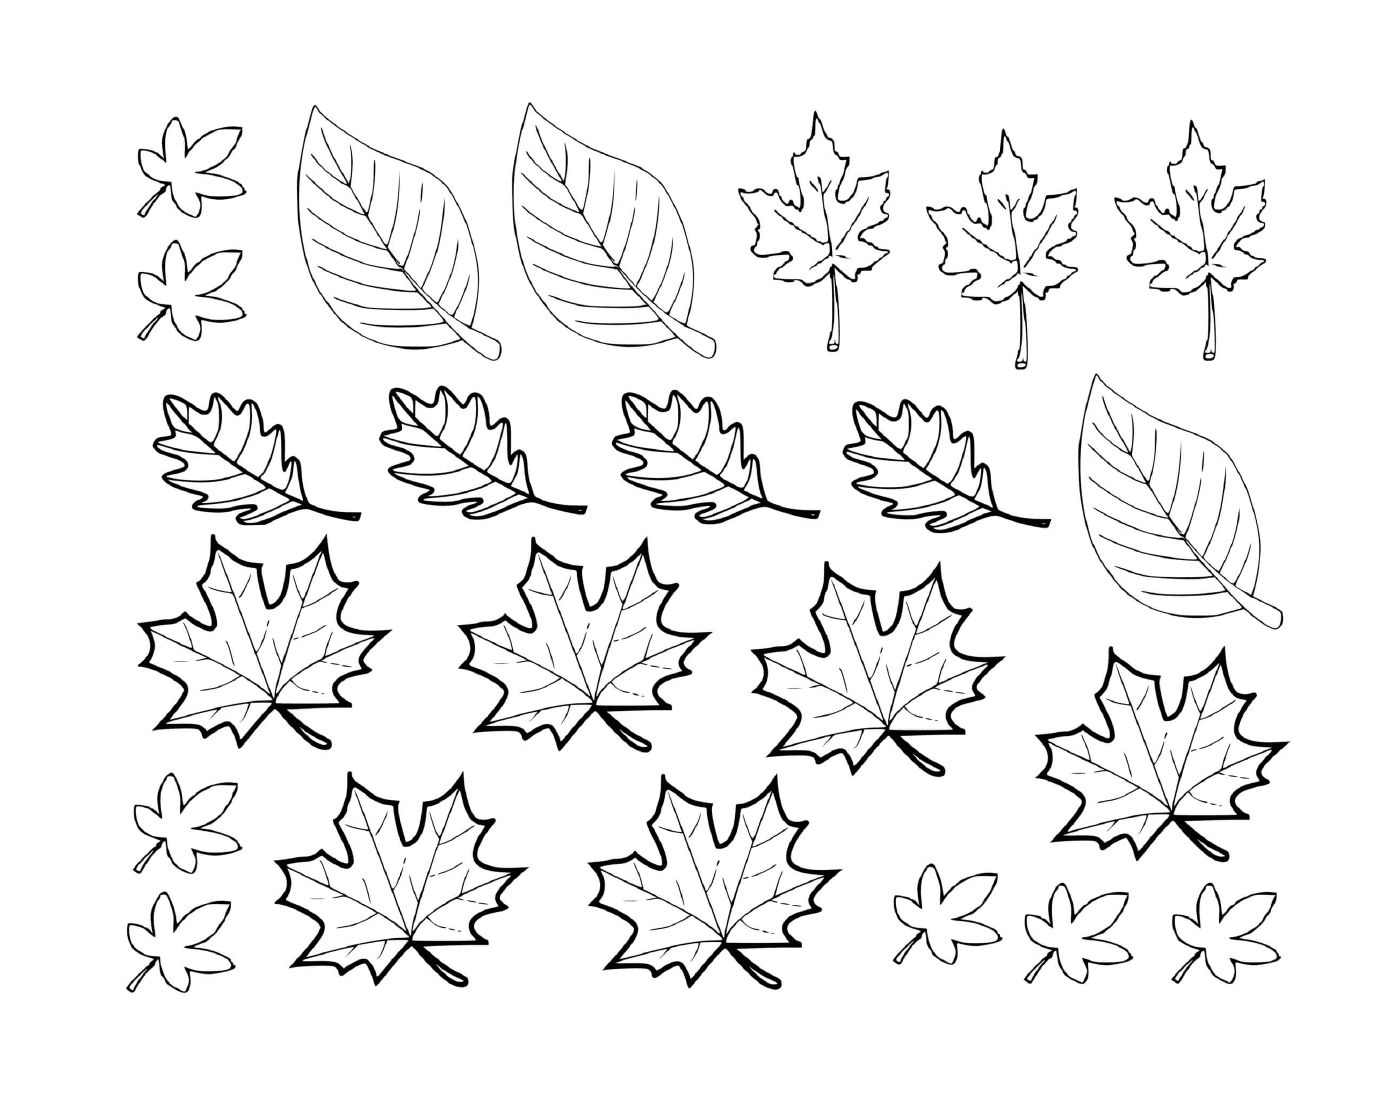   Un ensemble de feuilles dessinées 